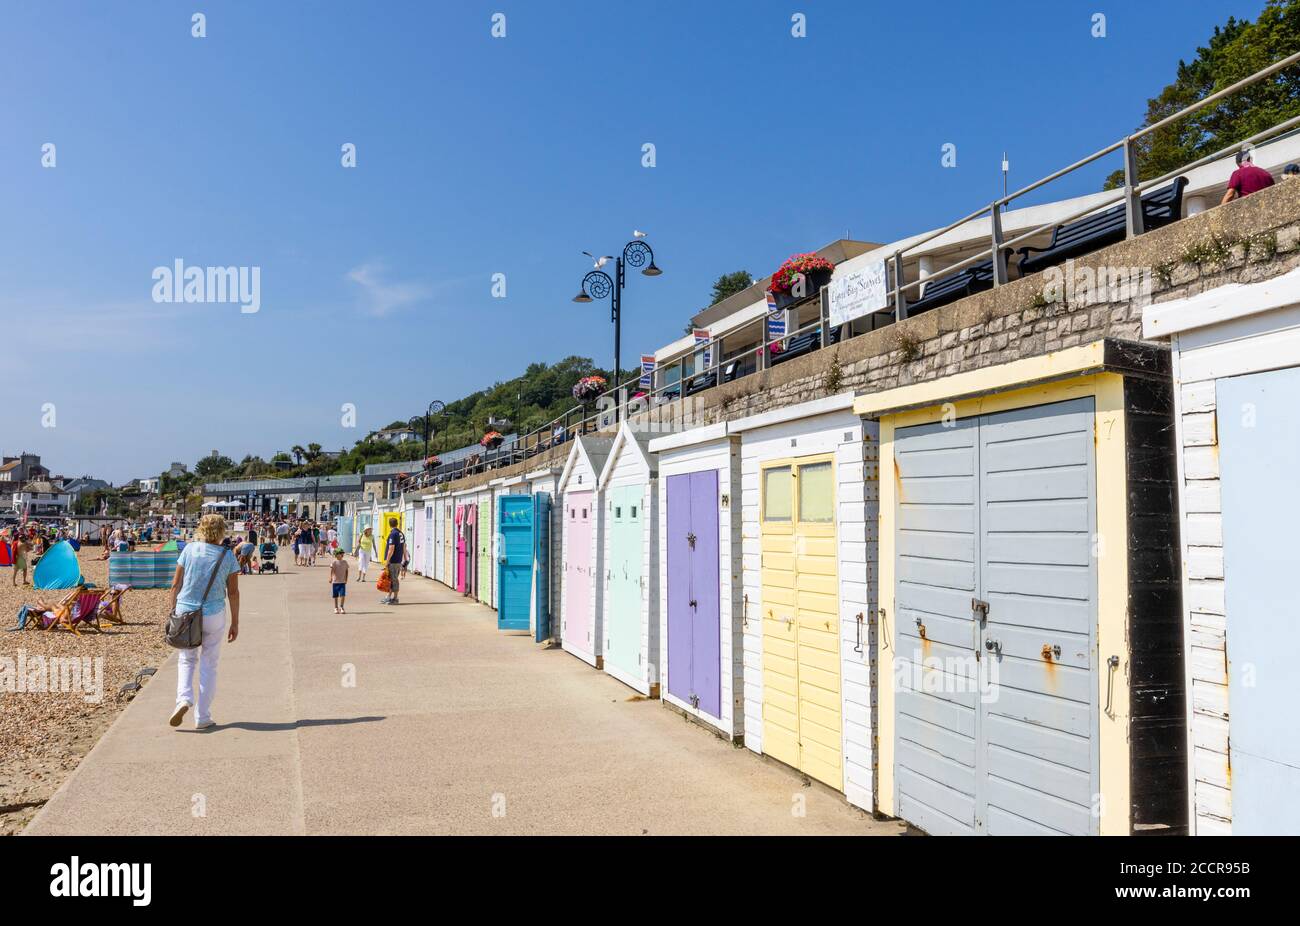 Huttes de plage le long de la promenade Marine Parade à Lyme Regis, une station balnéaire populaire de la côte jurassique à Dorset, au sud-ouest de l'Angleterre Banque D'Images